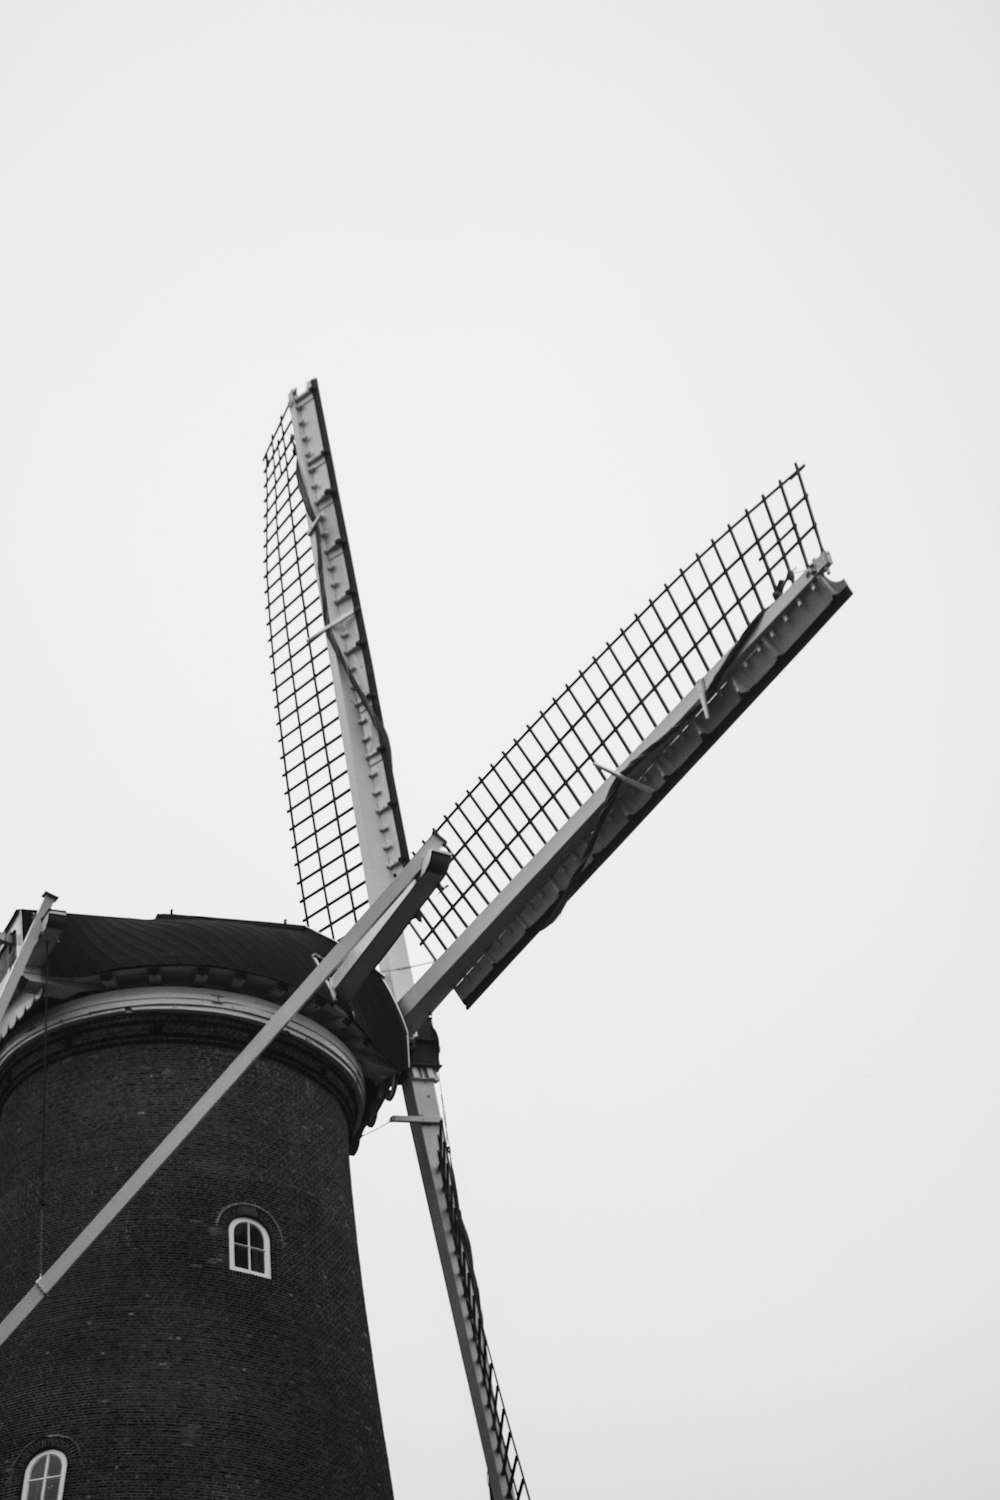 Foto en escala de grises de un molino de viento